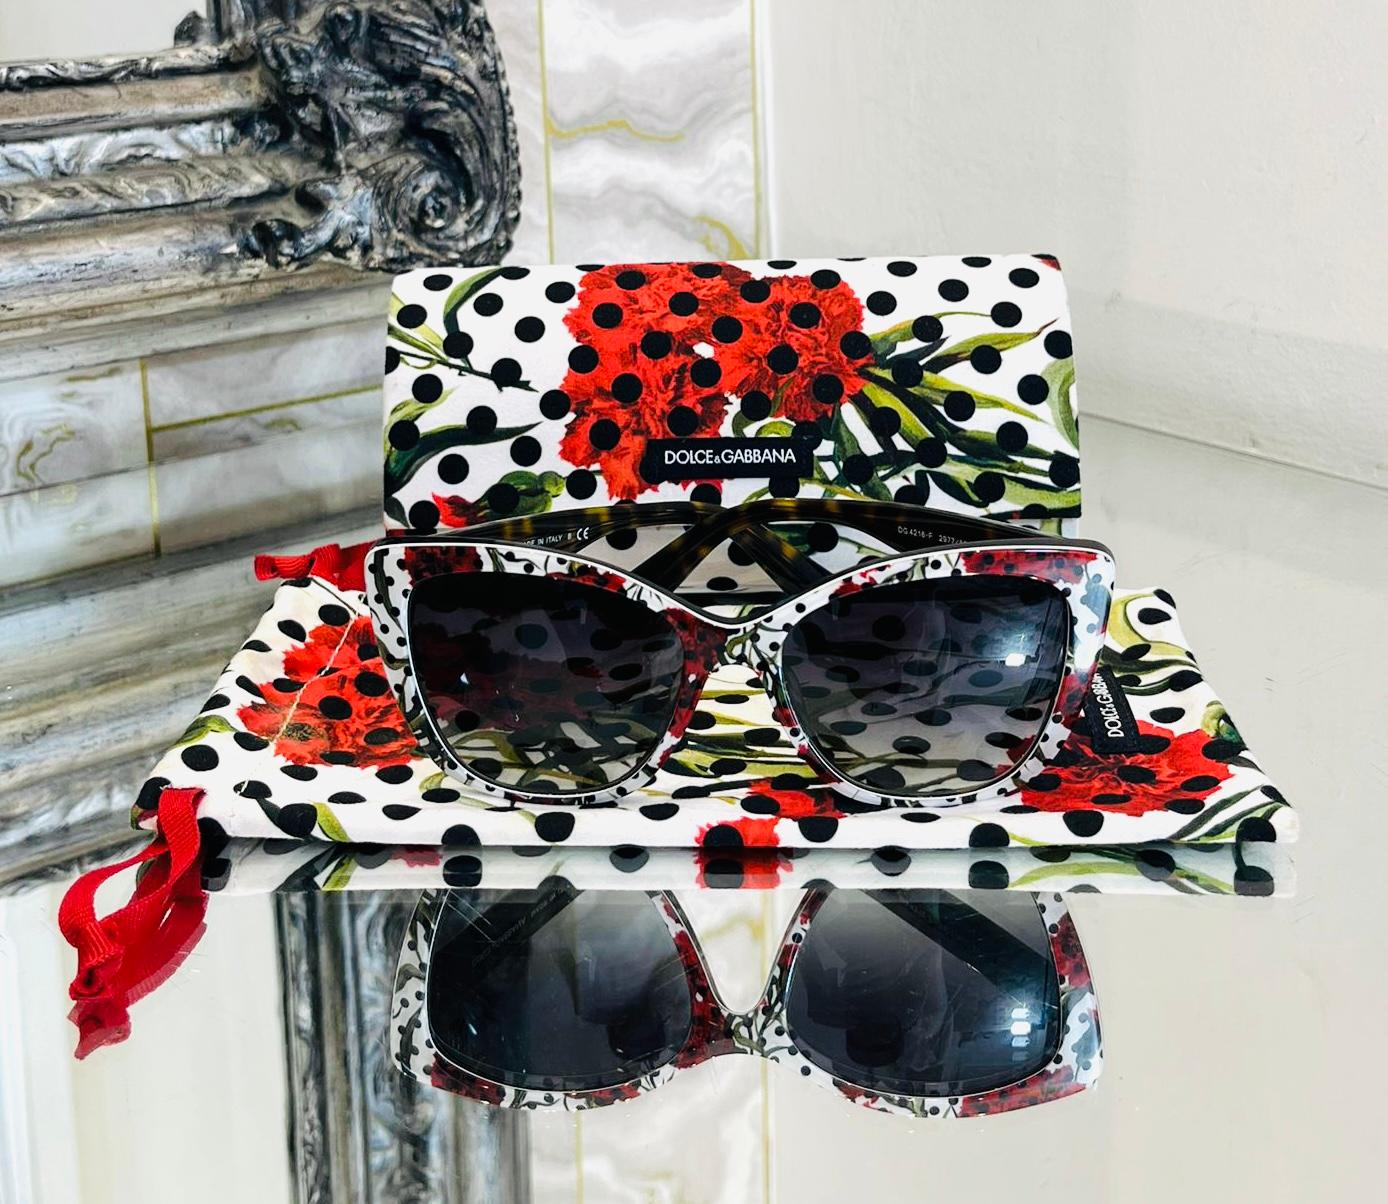 Dolce & Gabbana Sonnenbrille mit Rosendruck

Übergroße, weiße Sonnenbrille mit schwarzem Tupfen- und rotem Rosenprint.

Mit Cat-Eye-Silhouette und goldenem 